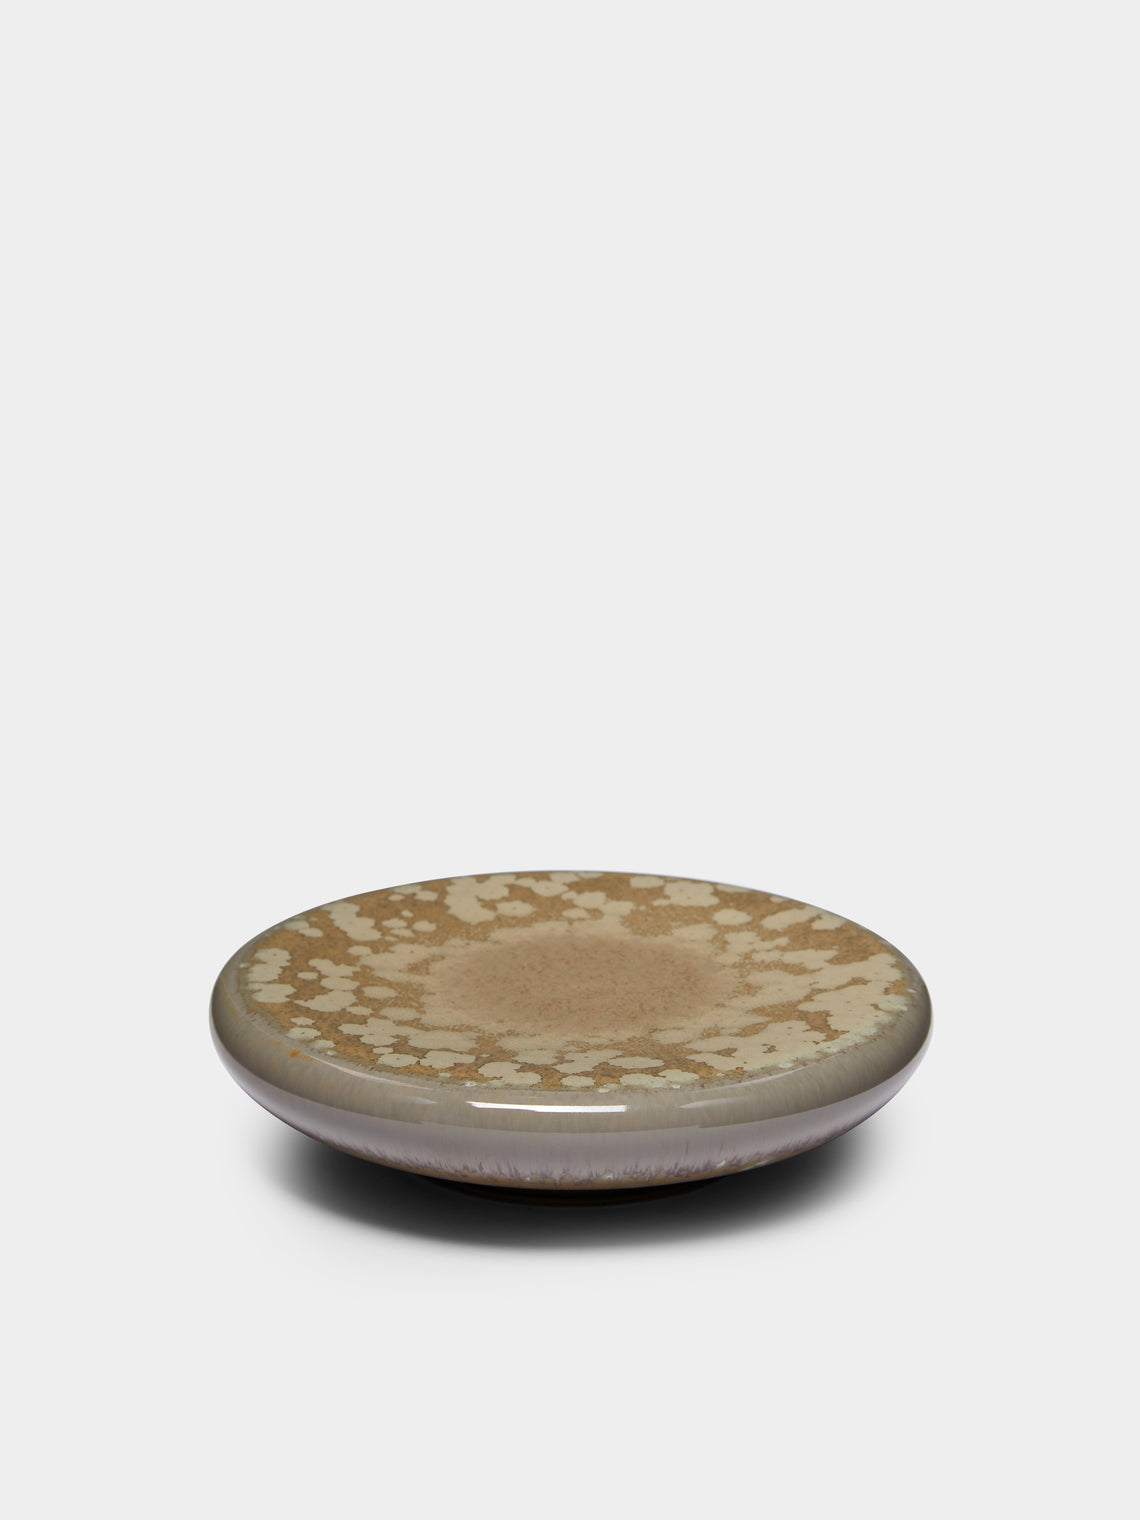 Jaune de Chrome - Basmati Bubble Porcelain Small Plate -  - ABASK